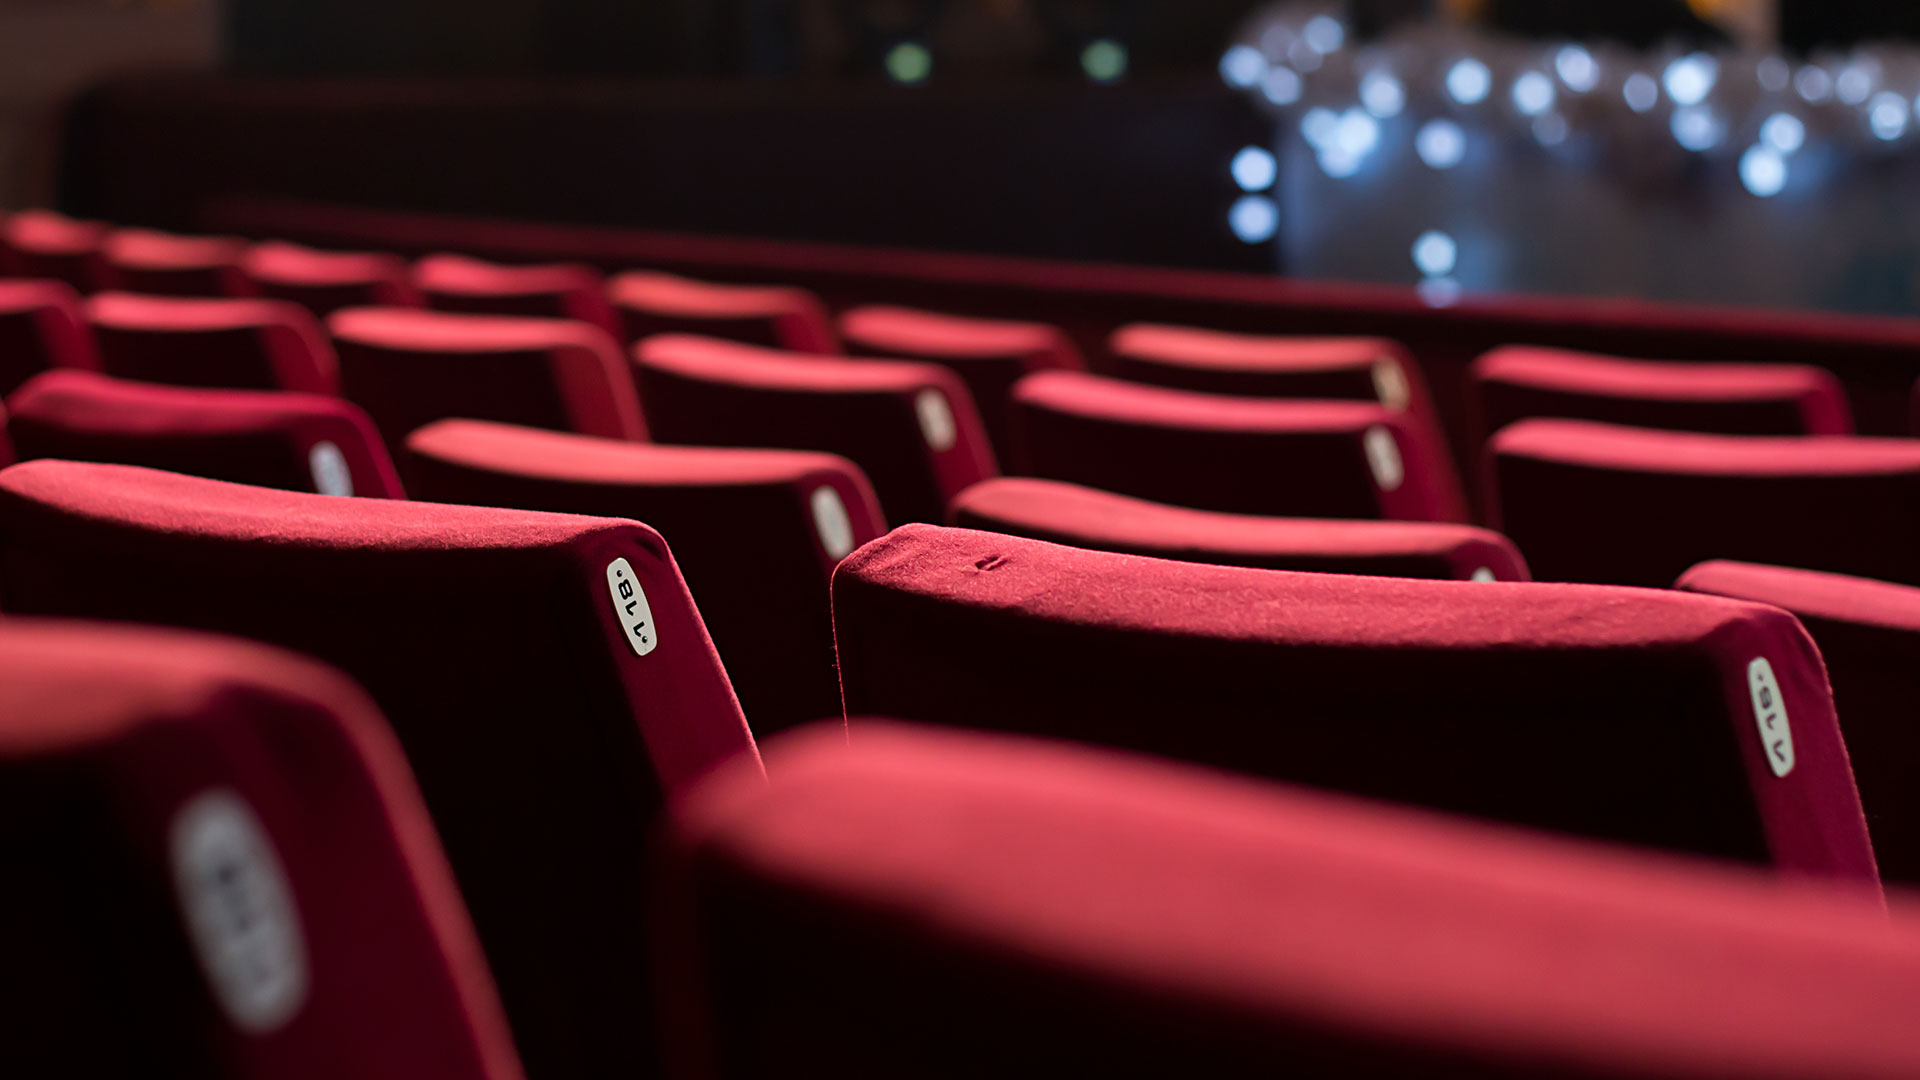 2020 ile sinemalarda e-bilet dönemi başlıyor!